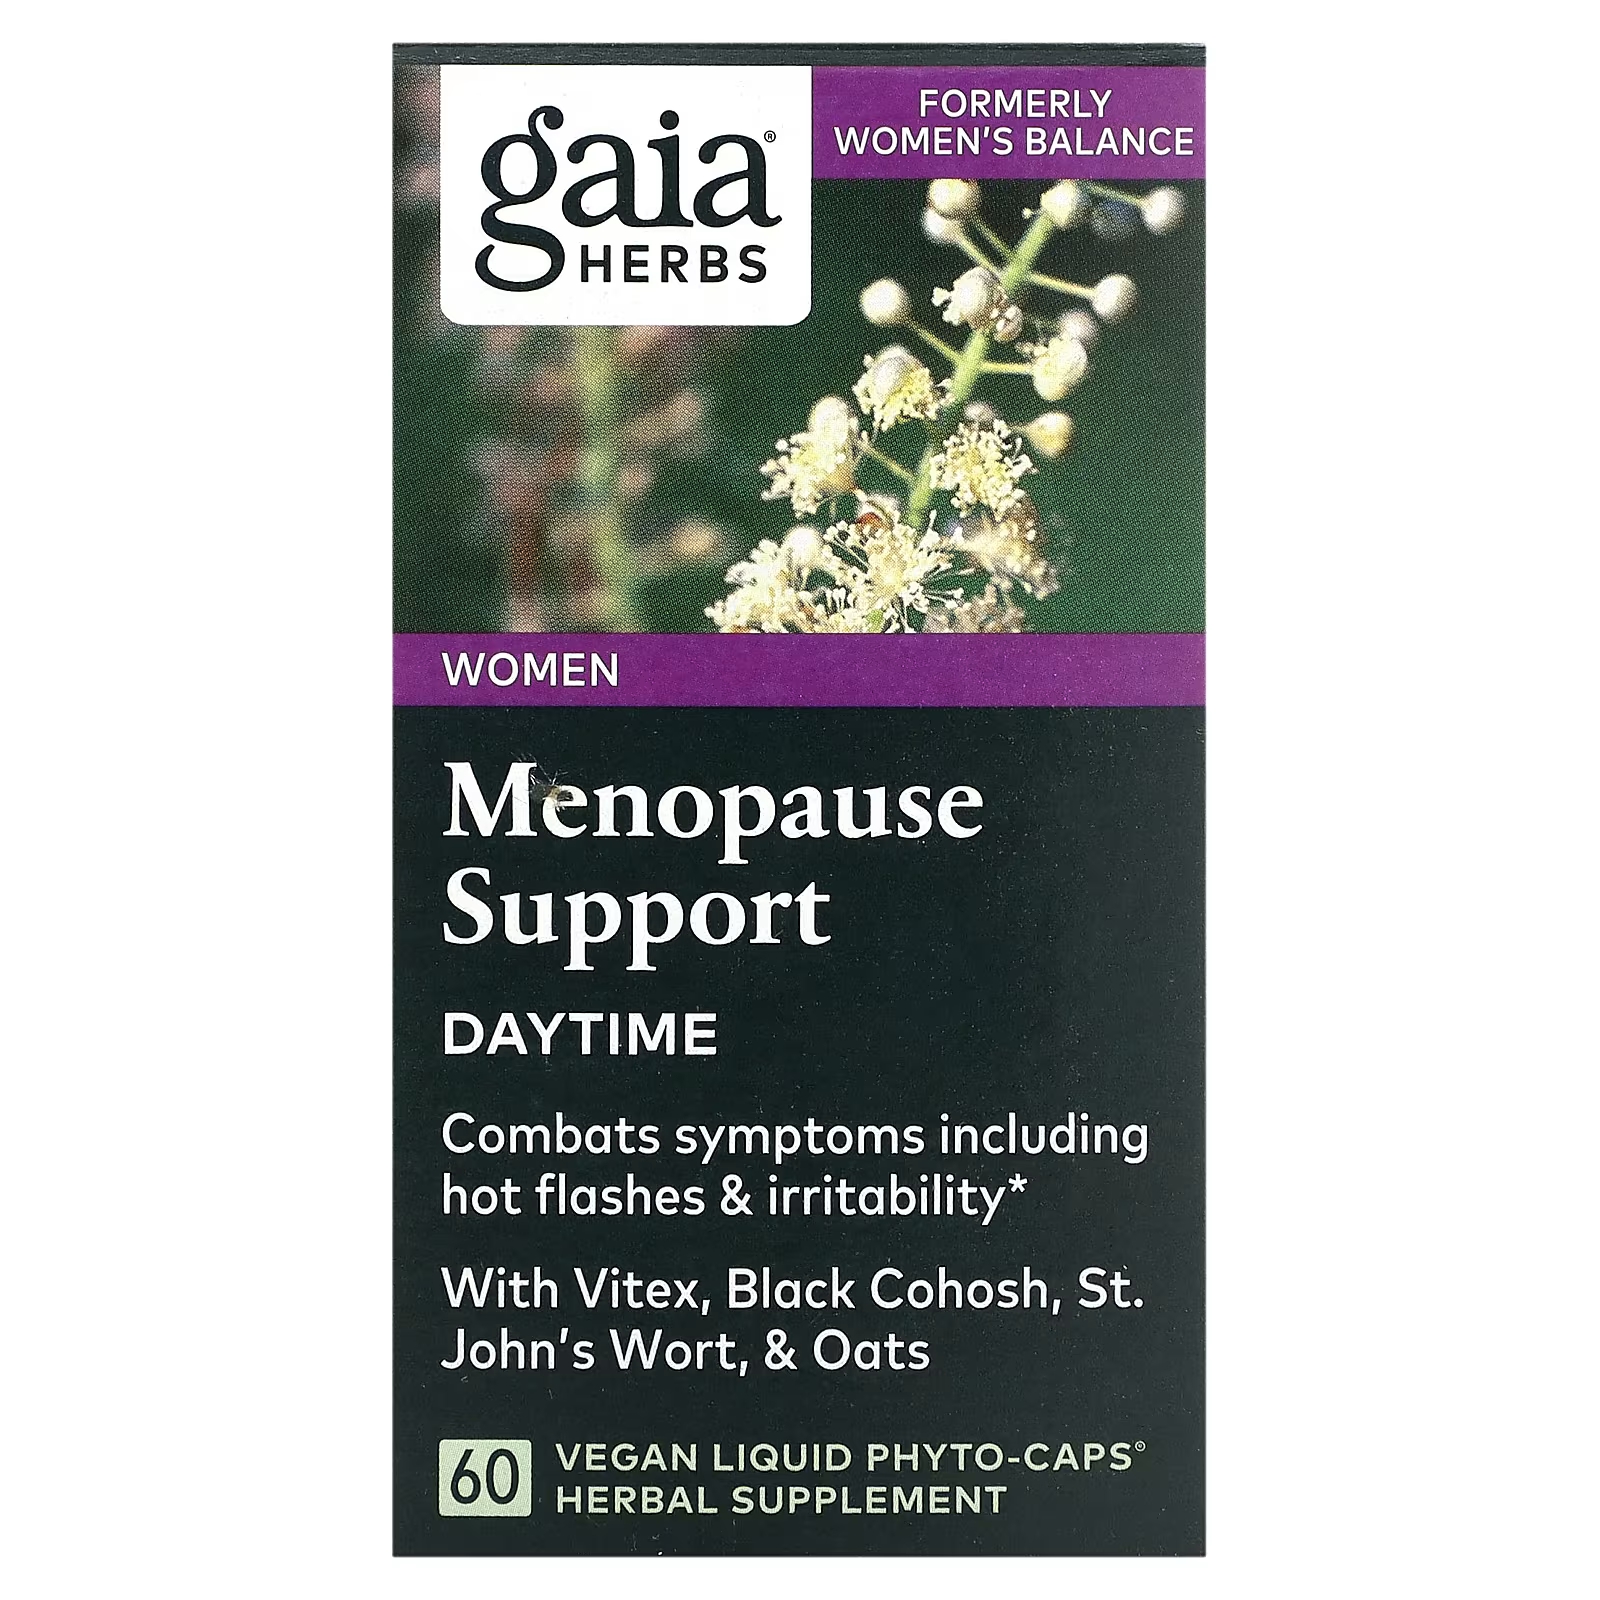 Растительная добавка Gaia Herbs поддержка менопаузы, 60 жидких фитокапсул воронец высокий